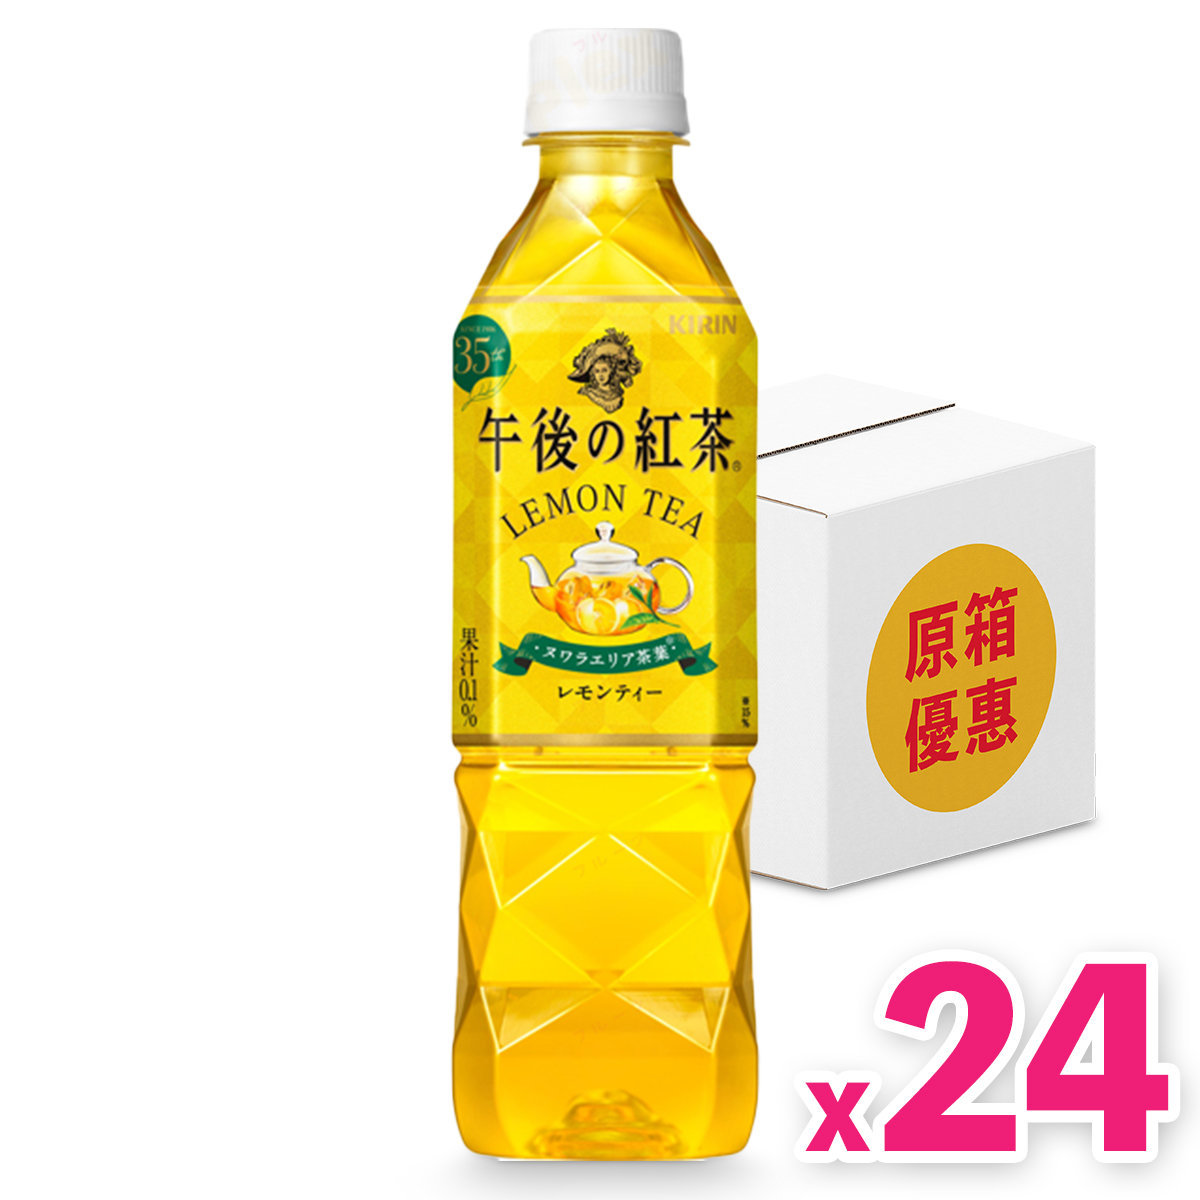 Afternoon Tea - Lemon Tea (500ml) x 24 bottles (Best Before: FEB2024) (隨機發放新舊包裝)